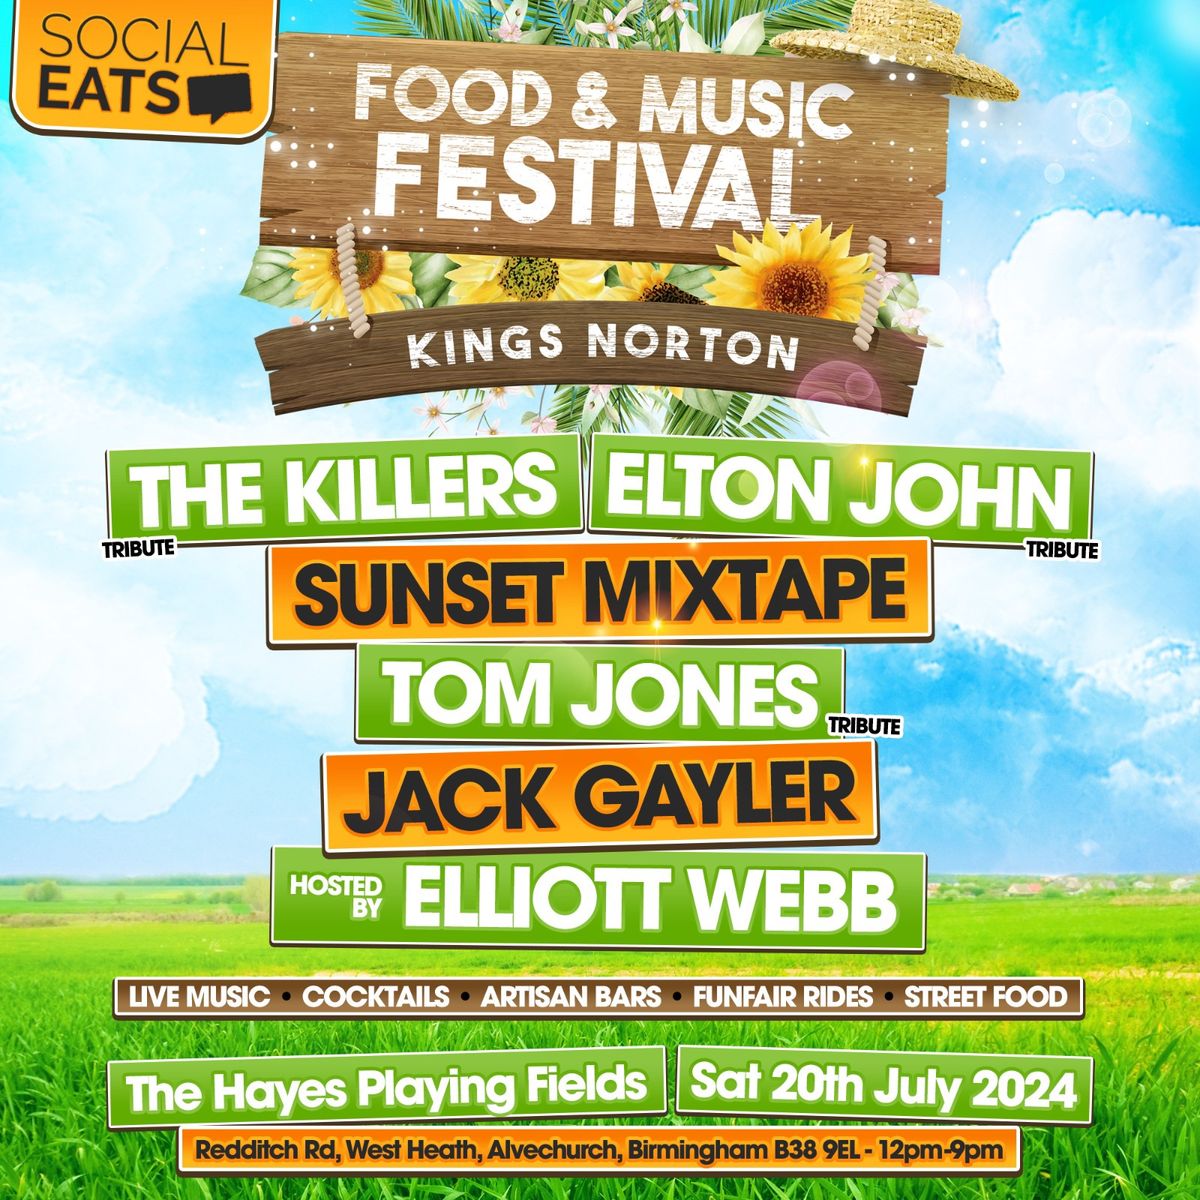 Social Eats Food & Music Festival - Kings Norton